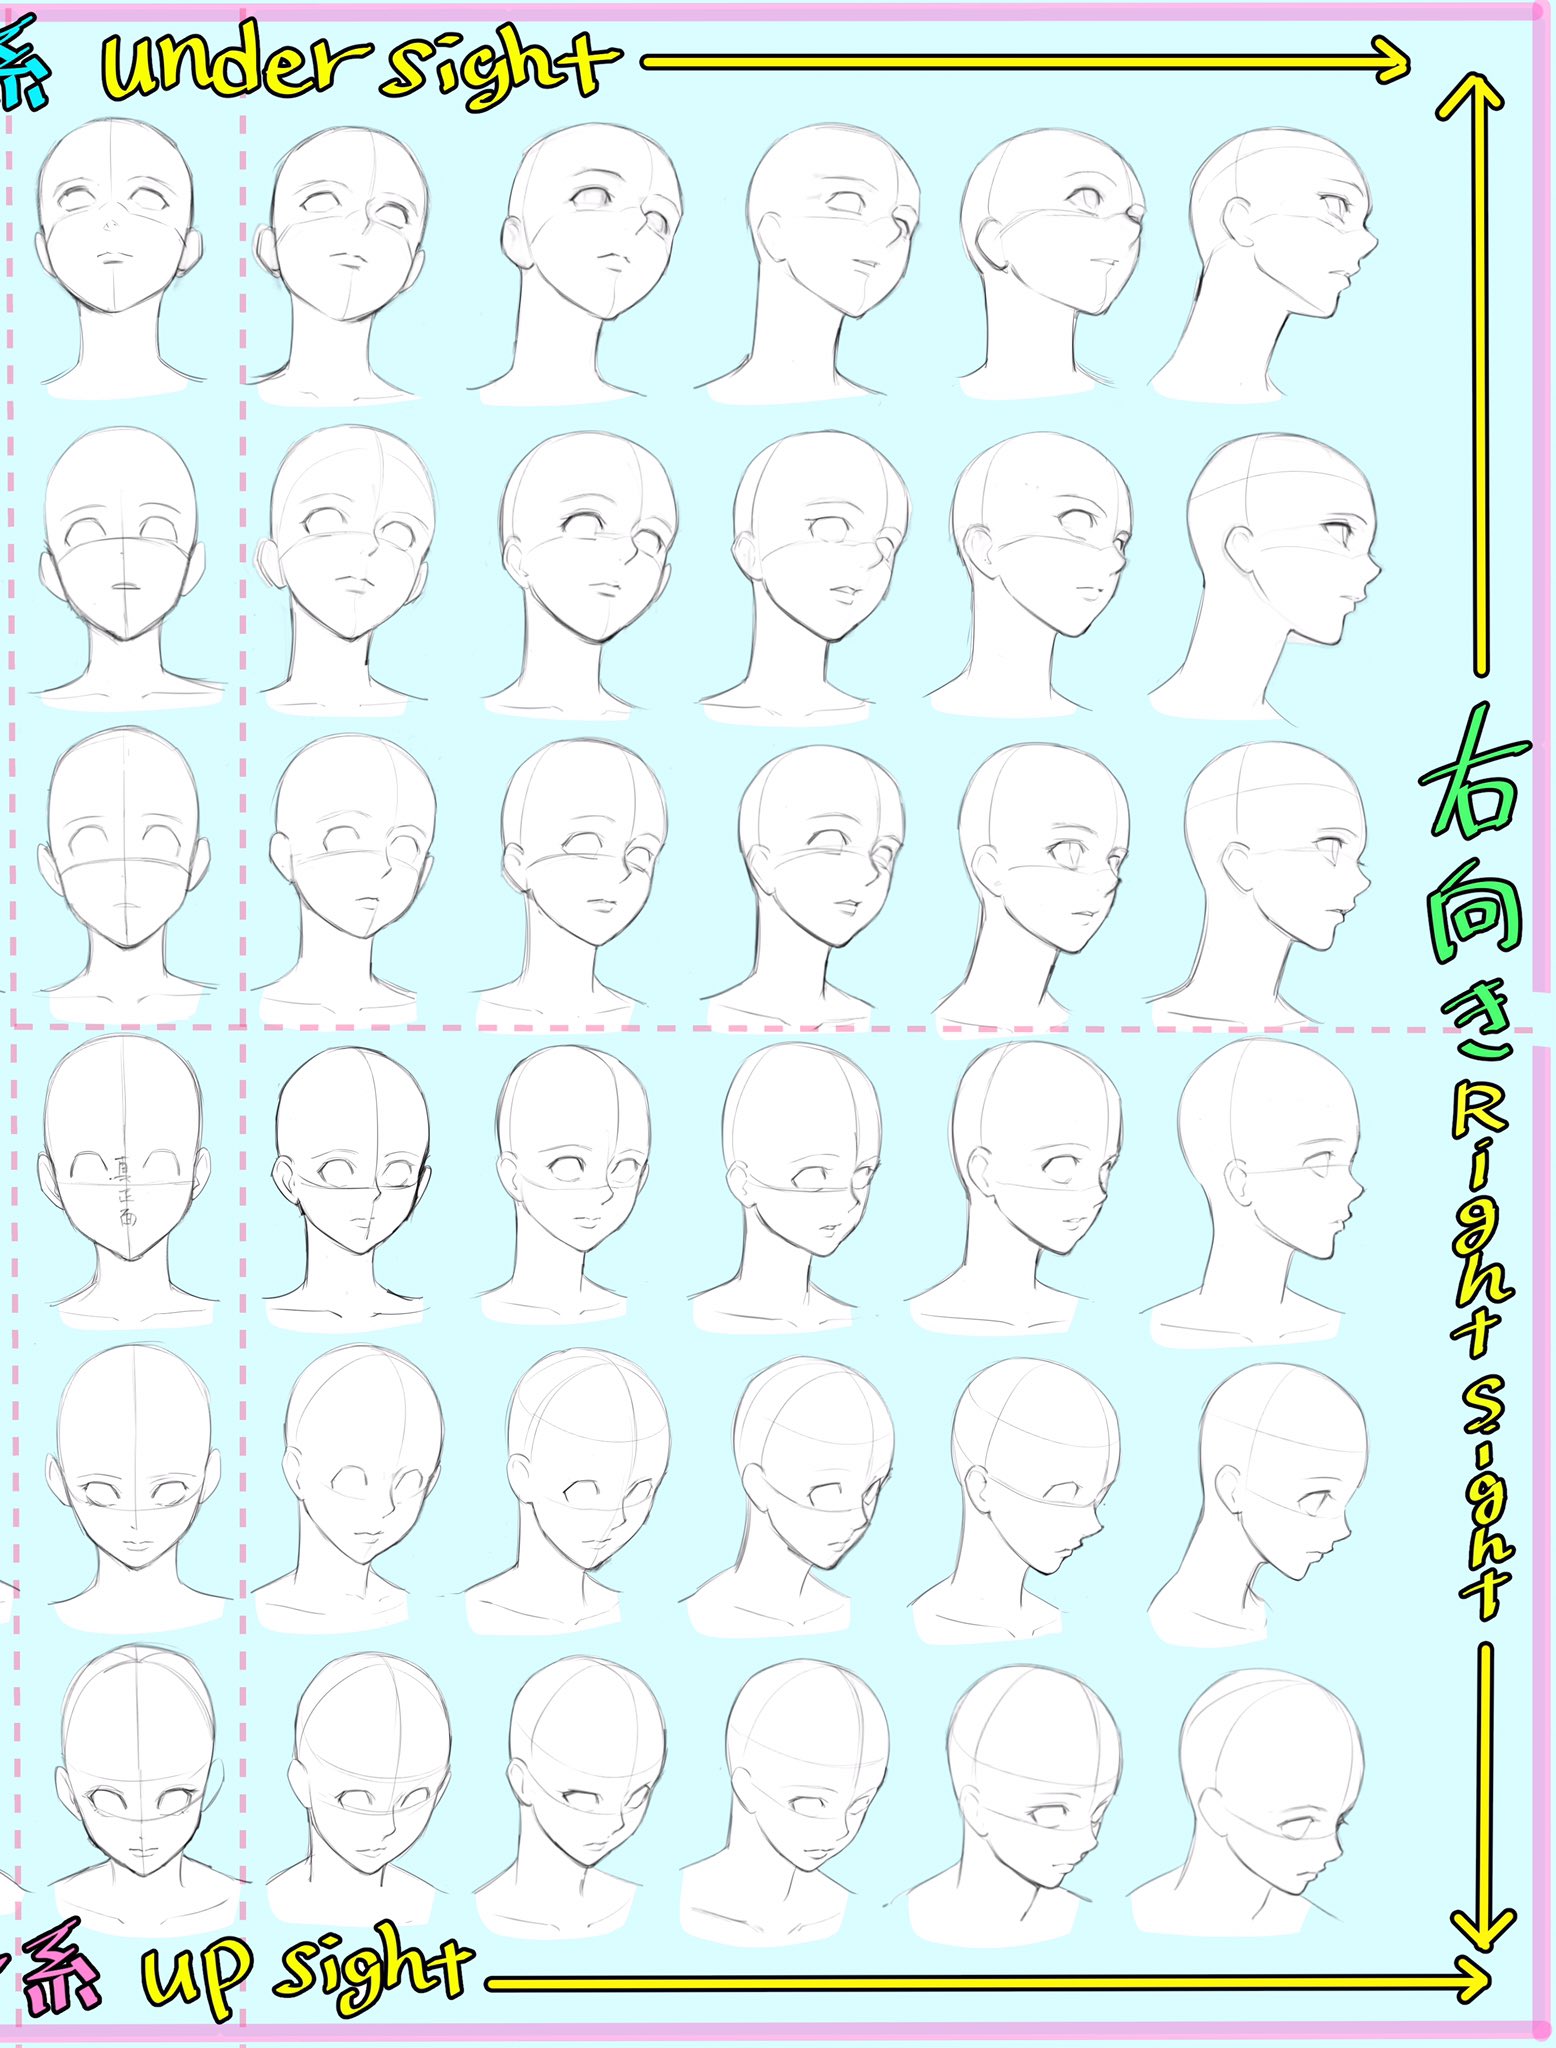 吉村拓也 イラスト講座 顔を描くのが苦手な方へ 顔面パース表 作りました 保存 コピー 練習など ご自由にお使い下さい